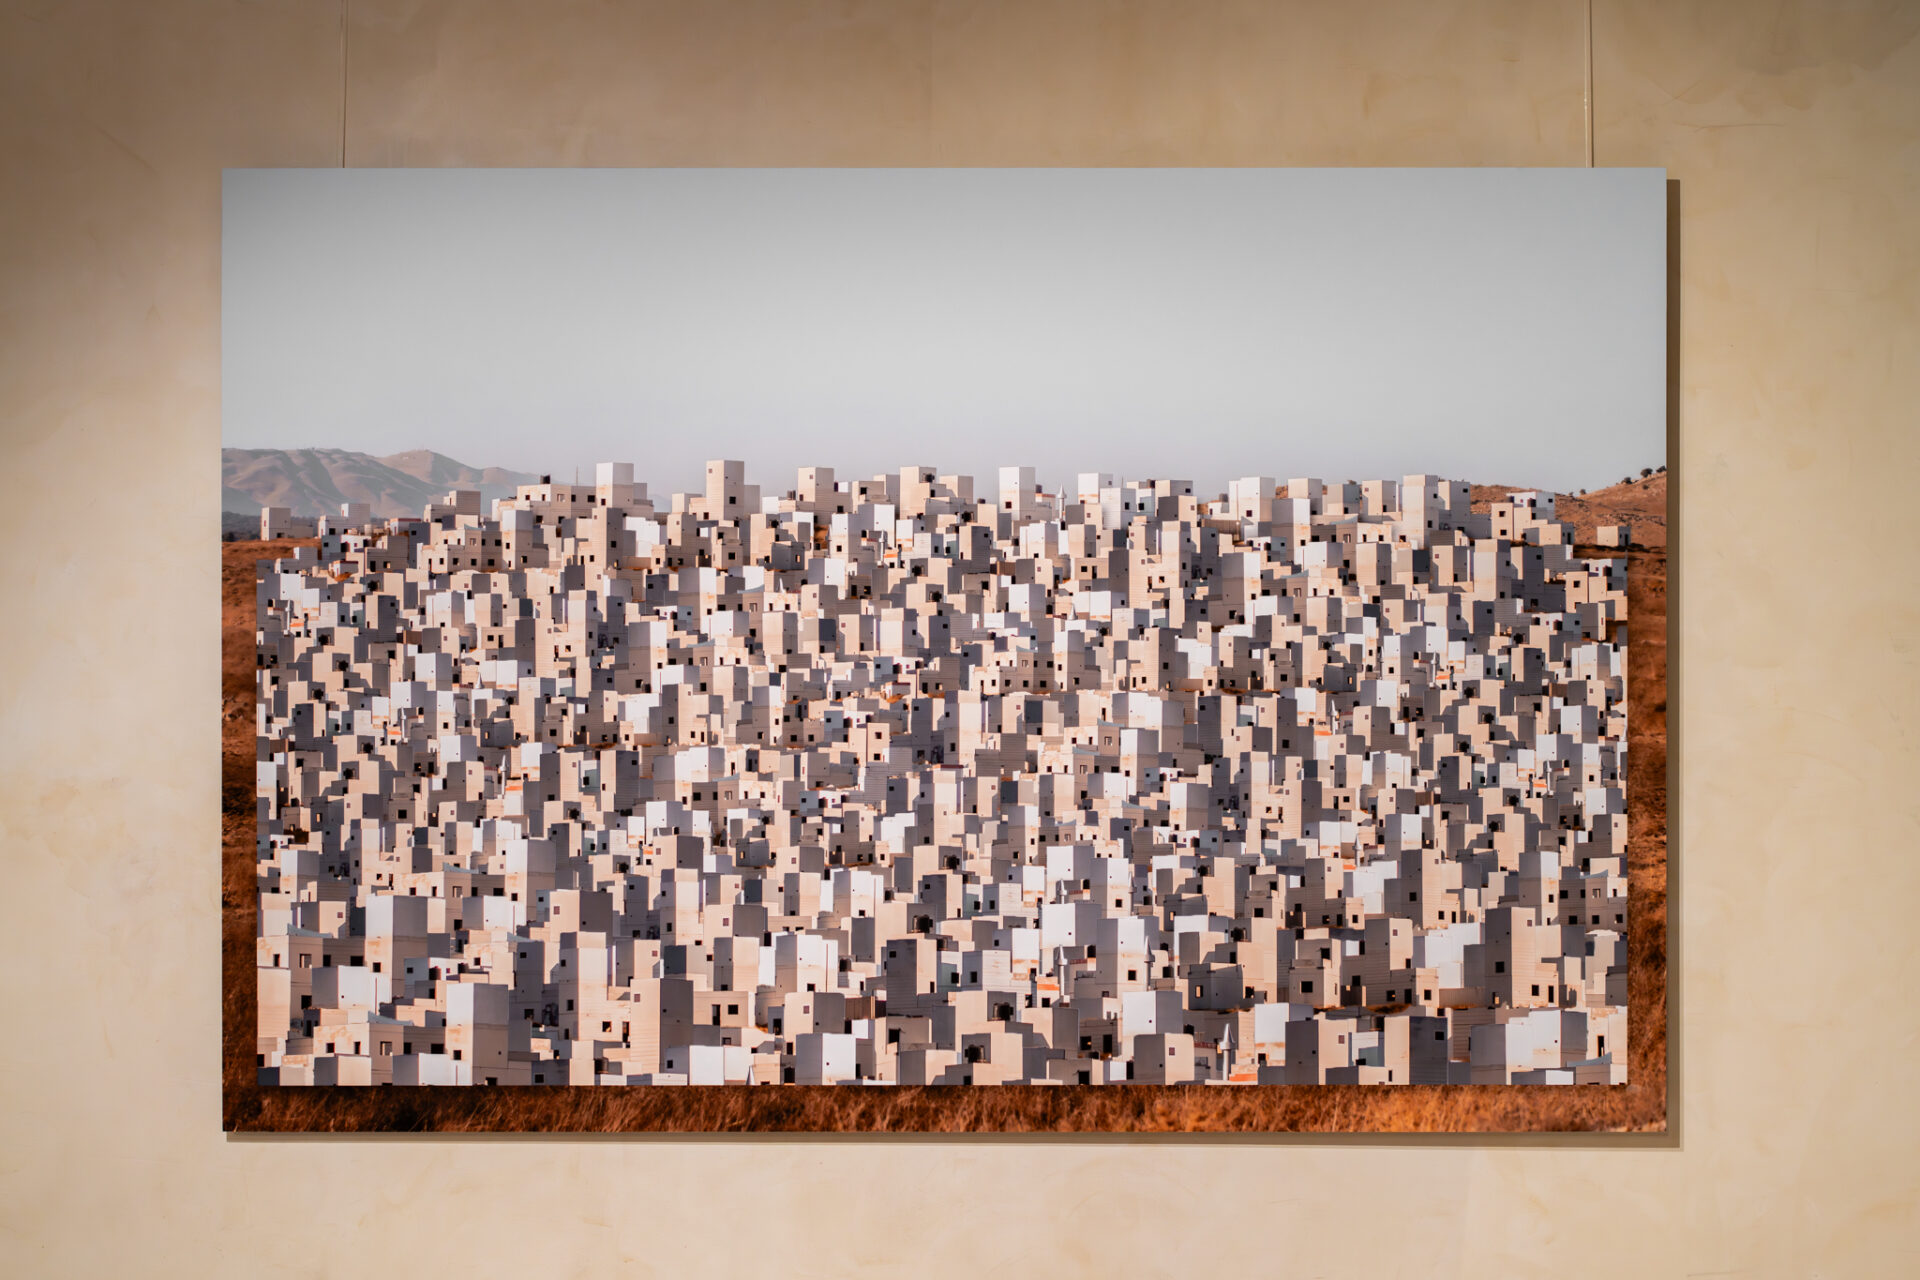 איתי ליפשיץ, עיר בלתי נראית, 2023, צילום, קולאז׳, הזרקת דיו פיגמנטי על נייר ארכיבי, 120 x 180 ס״מ<br />
צילום: דניאל חנוך